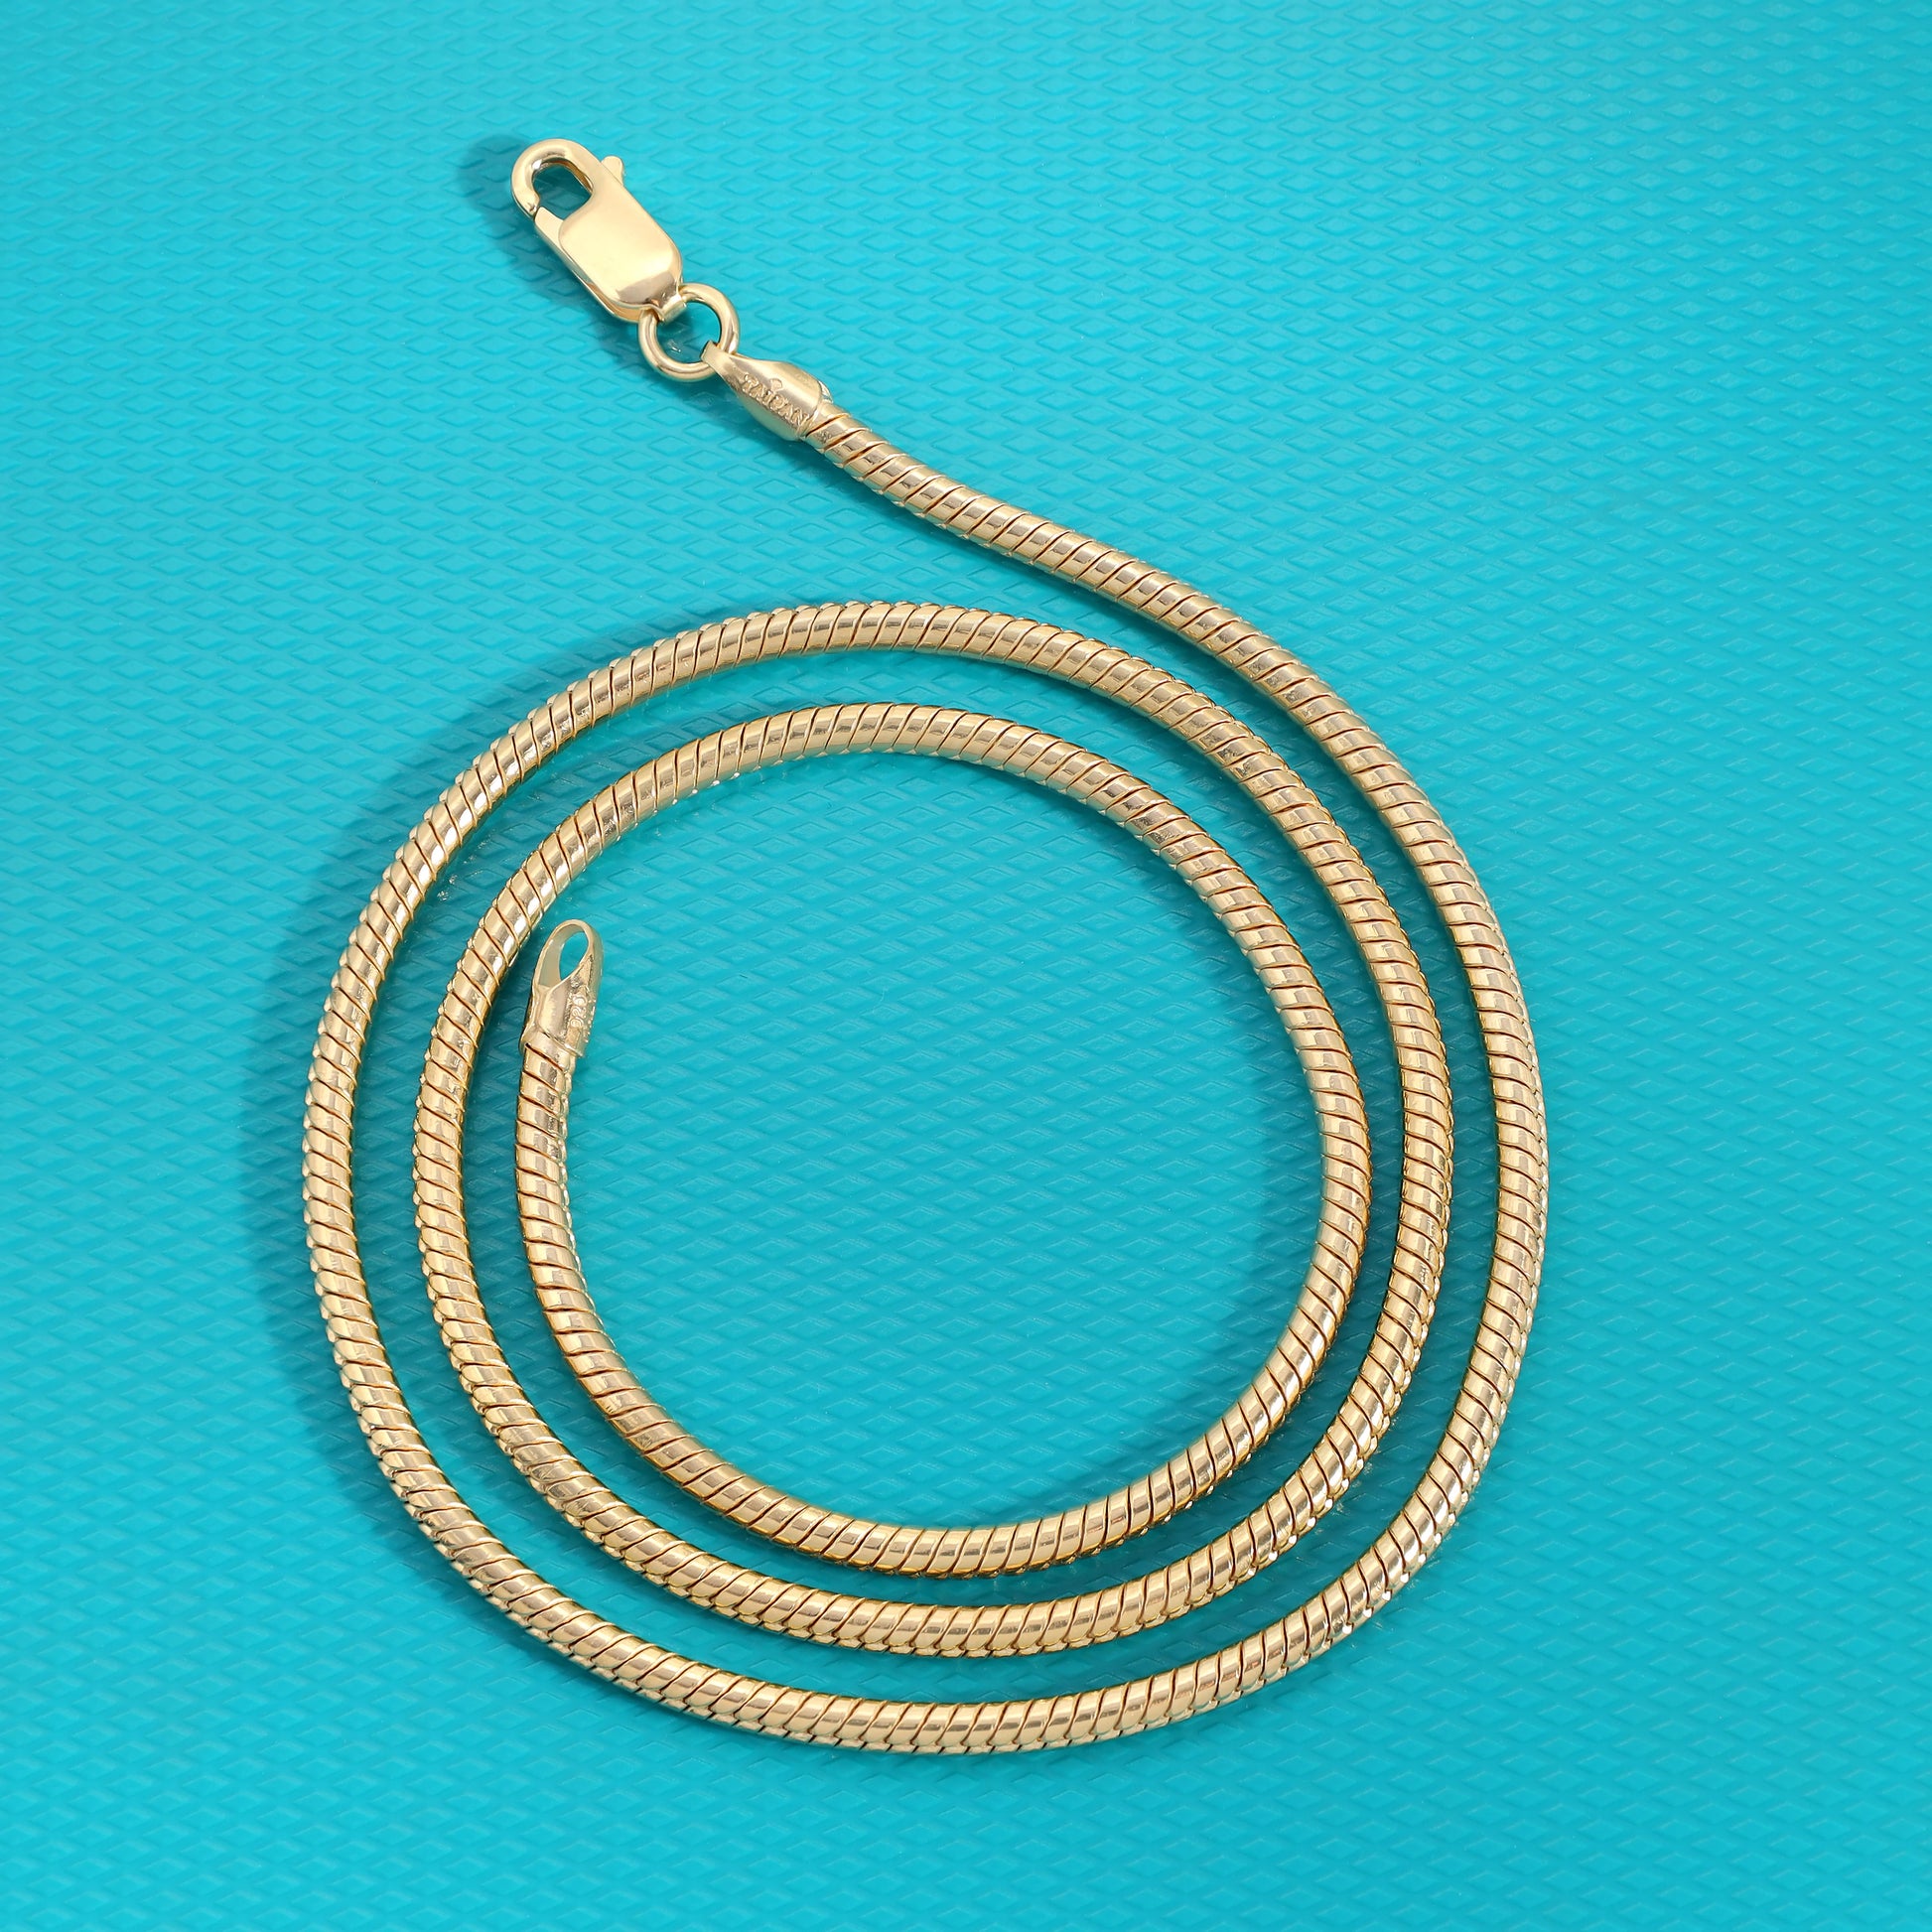 Vergoldete Snake Chain Schlangenkette 2,4mm 60cm lang 925 Sterling Silber (K812) - Taipan Schmuck